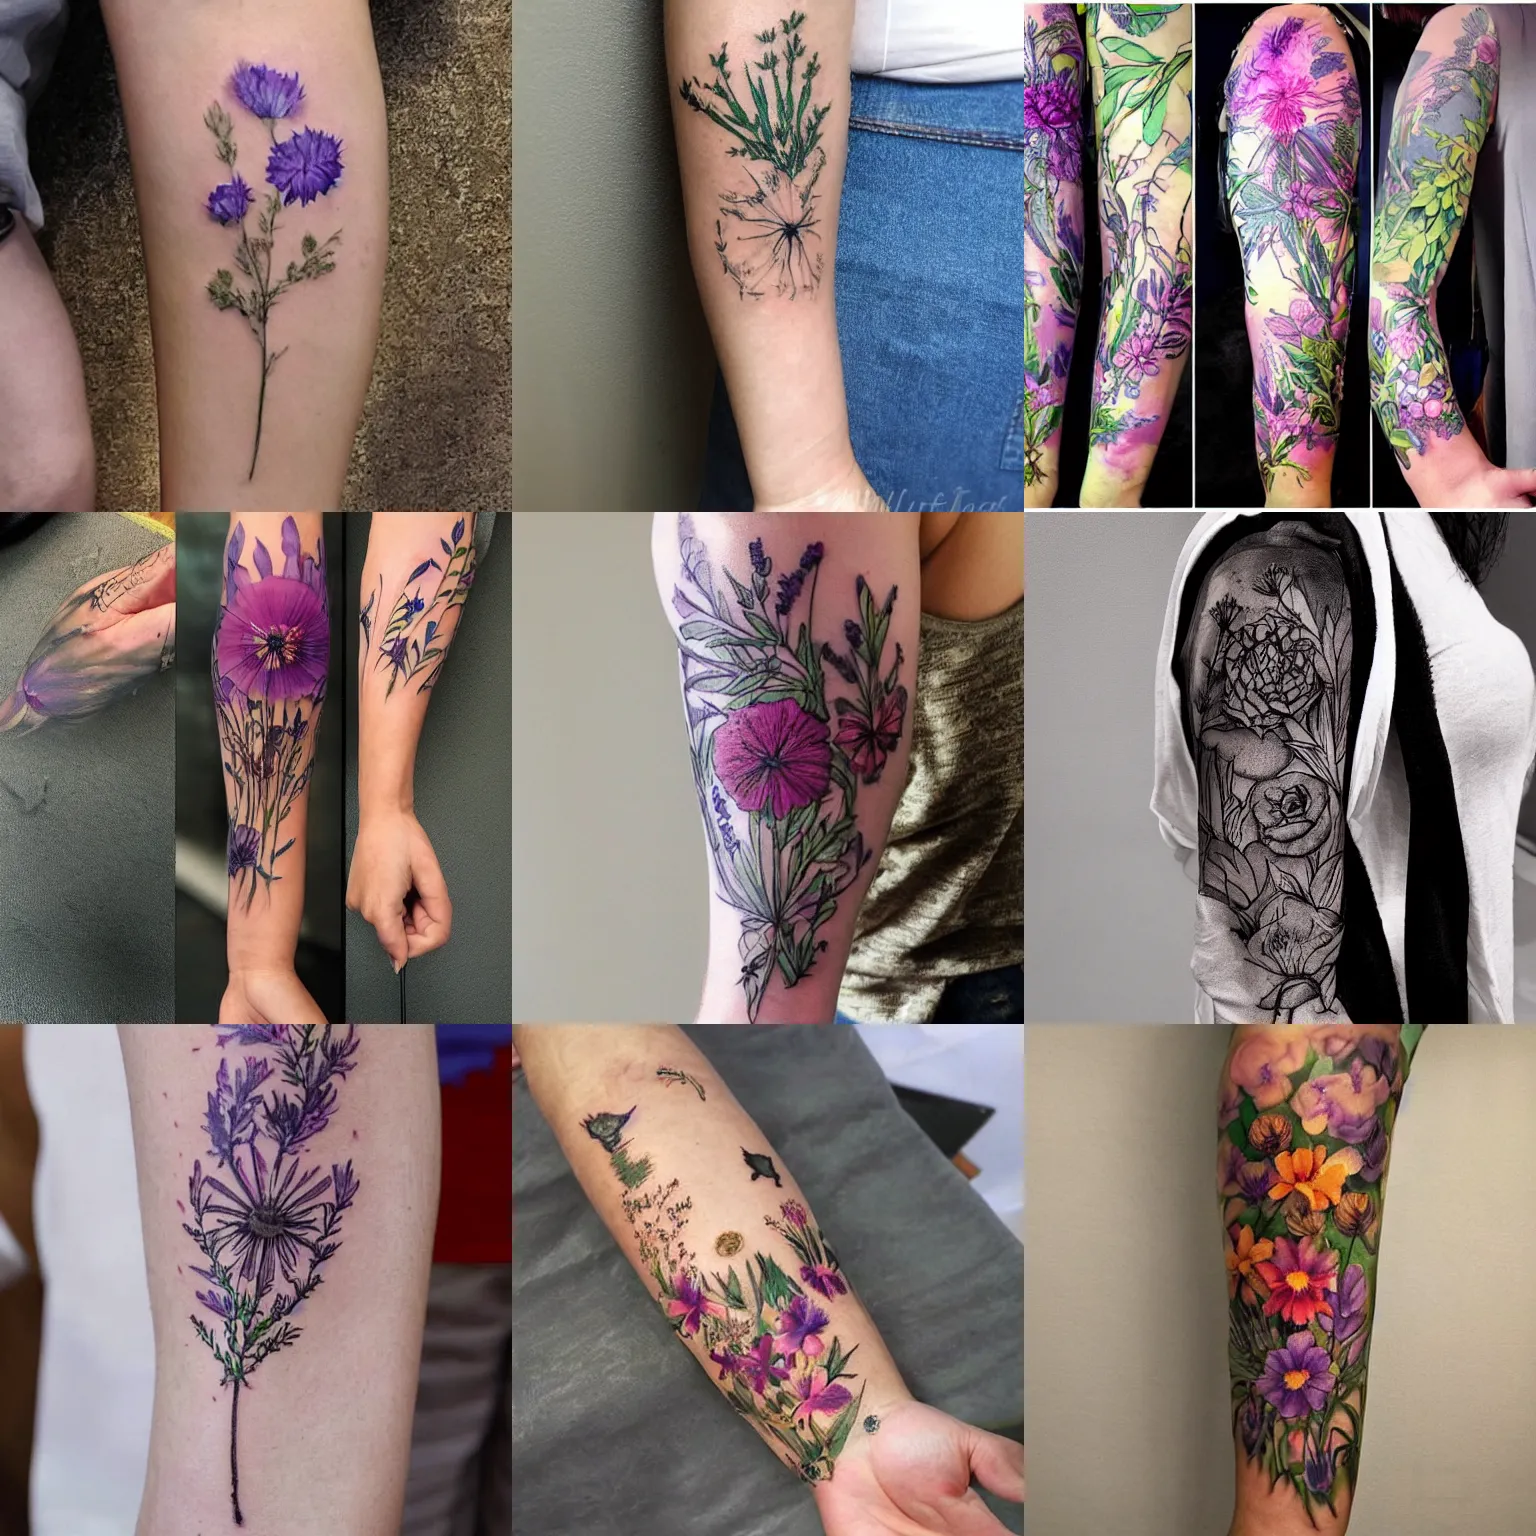 Sam J Tattoos - Upper arm floral piece 💐 • • • #flowers #floral #tattoo  #armtattoo #inked #stipple #blackandgreywork #lgbtq🌈 #milfordct  #milfordtattoo #largetattoo #tattoosforgirls | Facebook